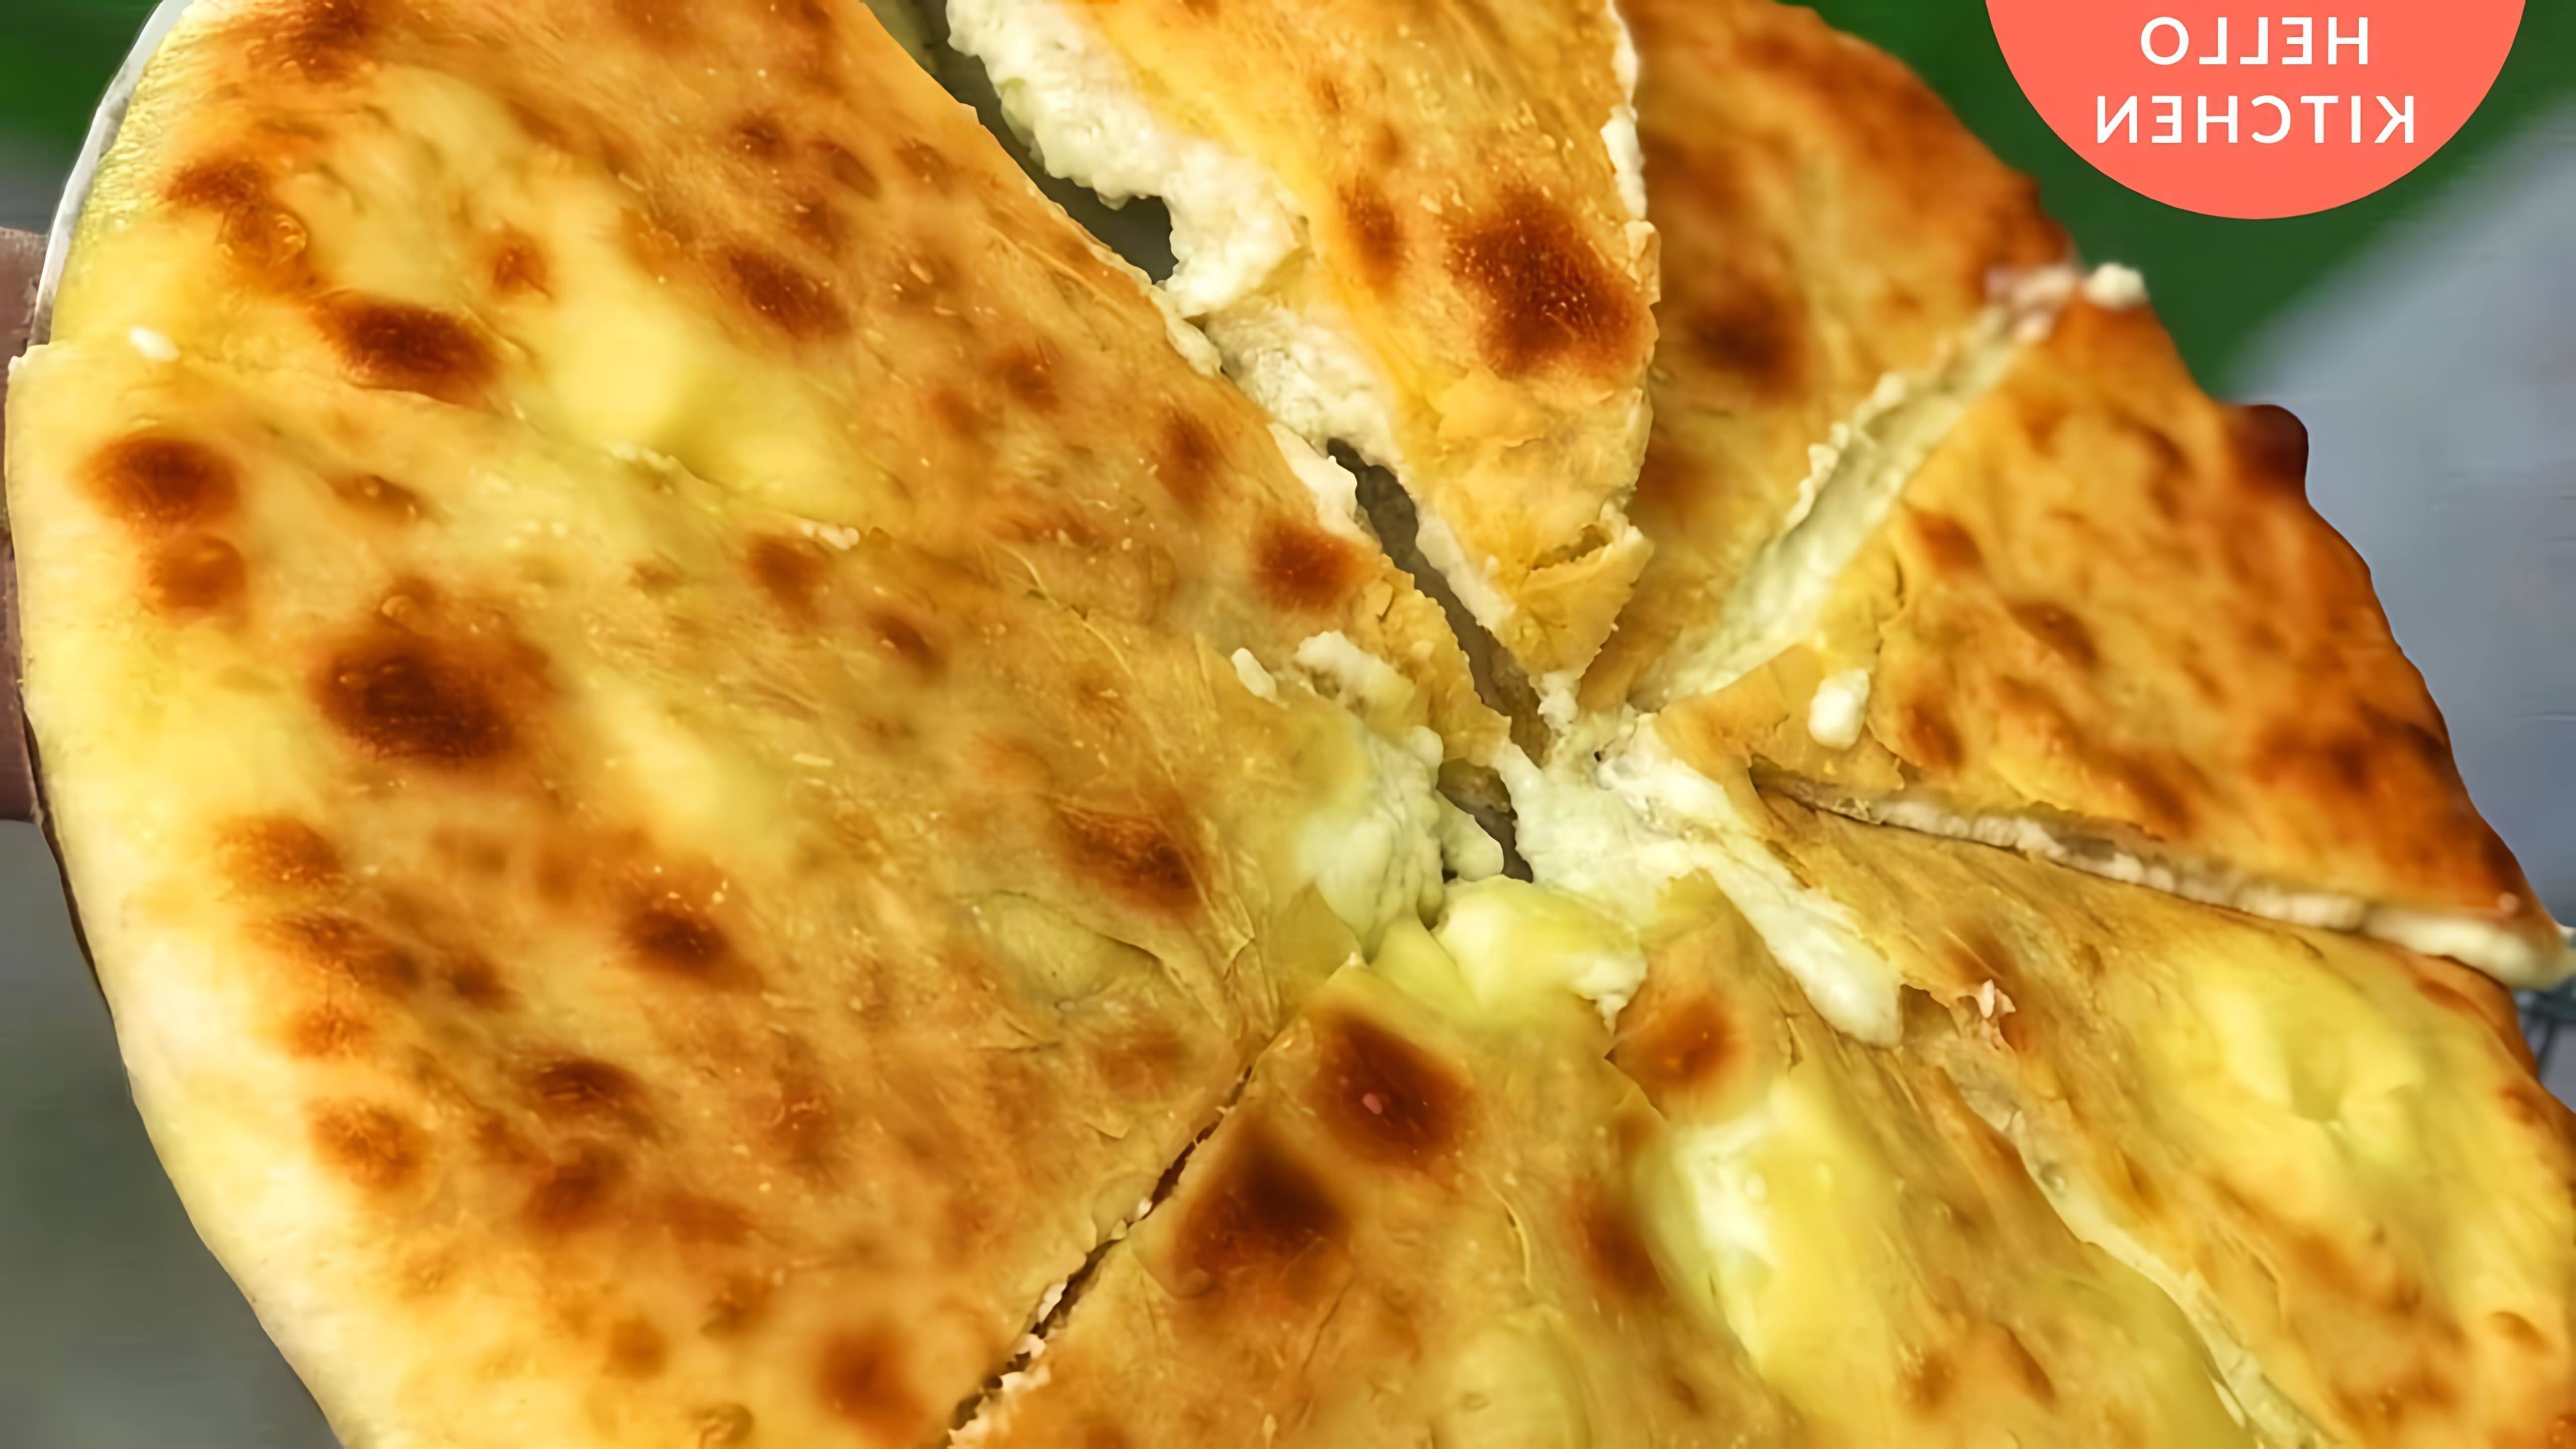 В этом видео демонстрируется процесс приготовления осетинского пирога с сыром "Уалибах"